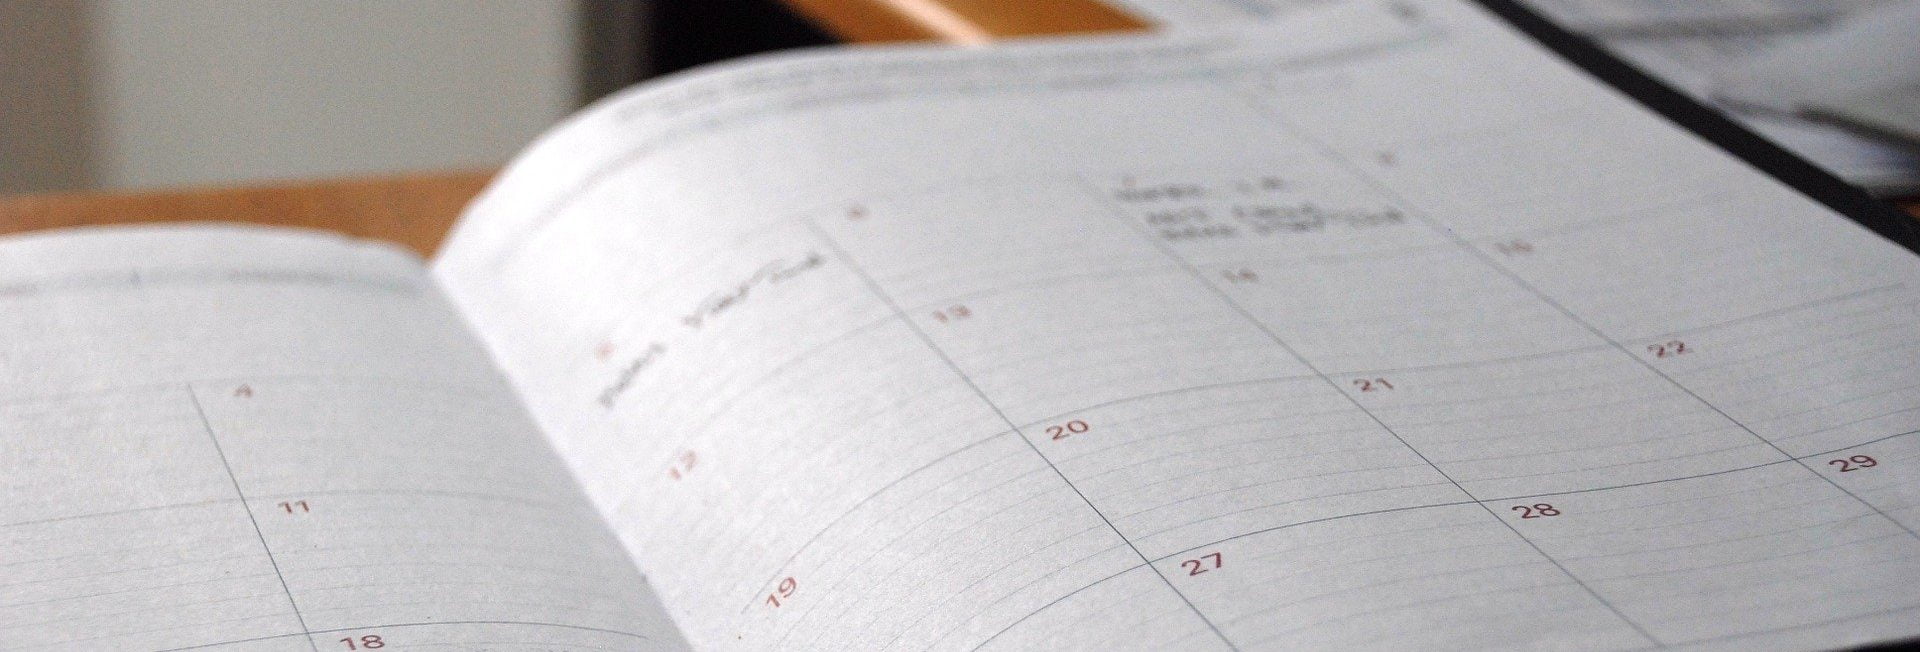 calendrier éditorial journée mondiale